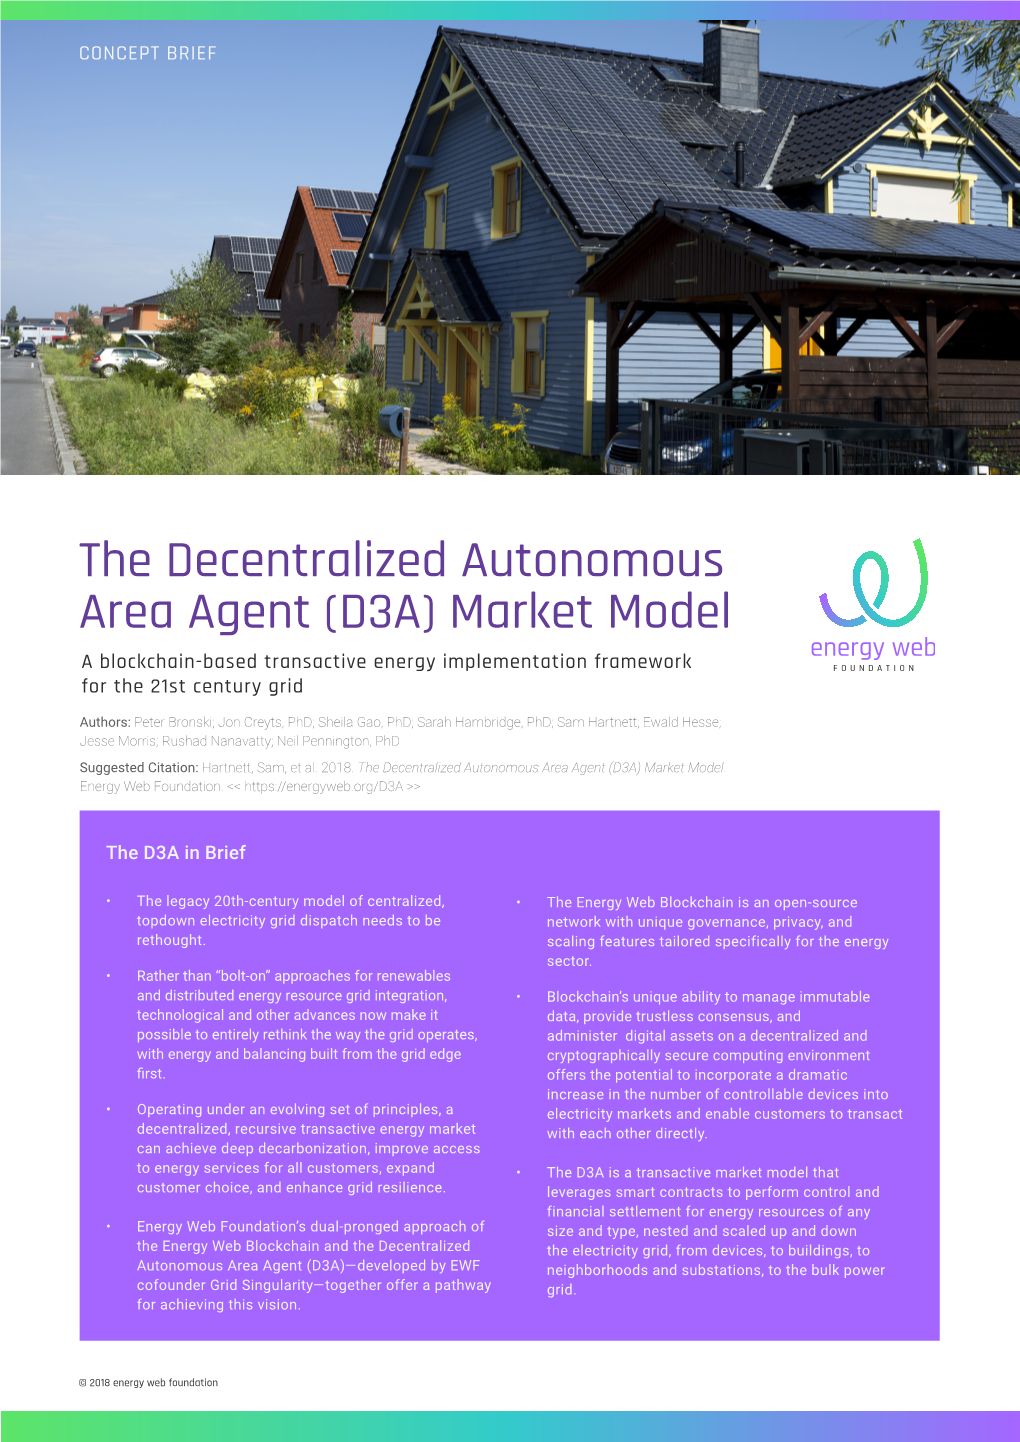 The Decentralized Autonomous Area Agent (D3A) Market Model a Blockchain-Based Transactive Energy Implementation Framework for the 21St Century Grid